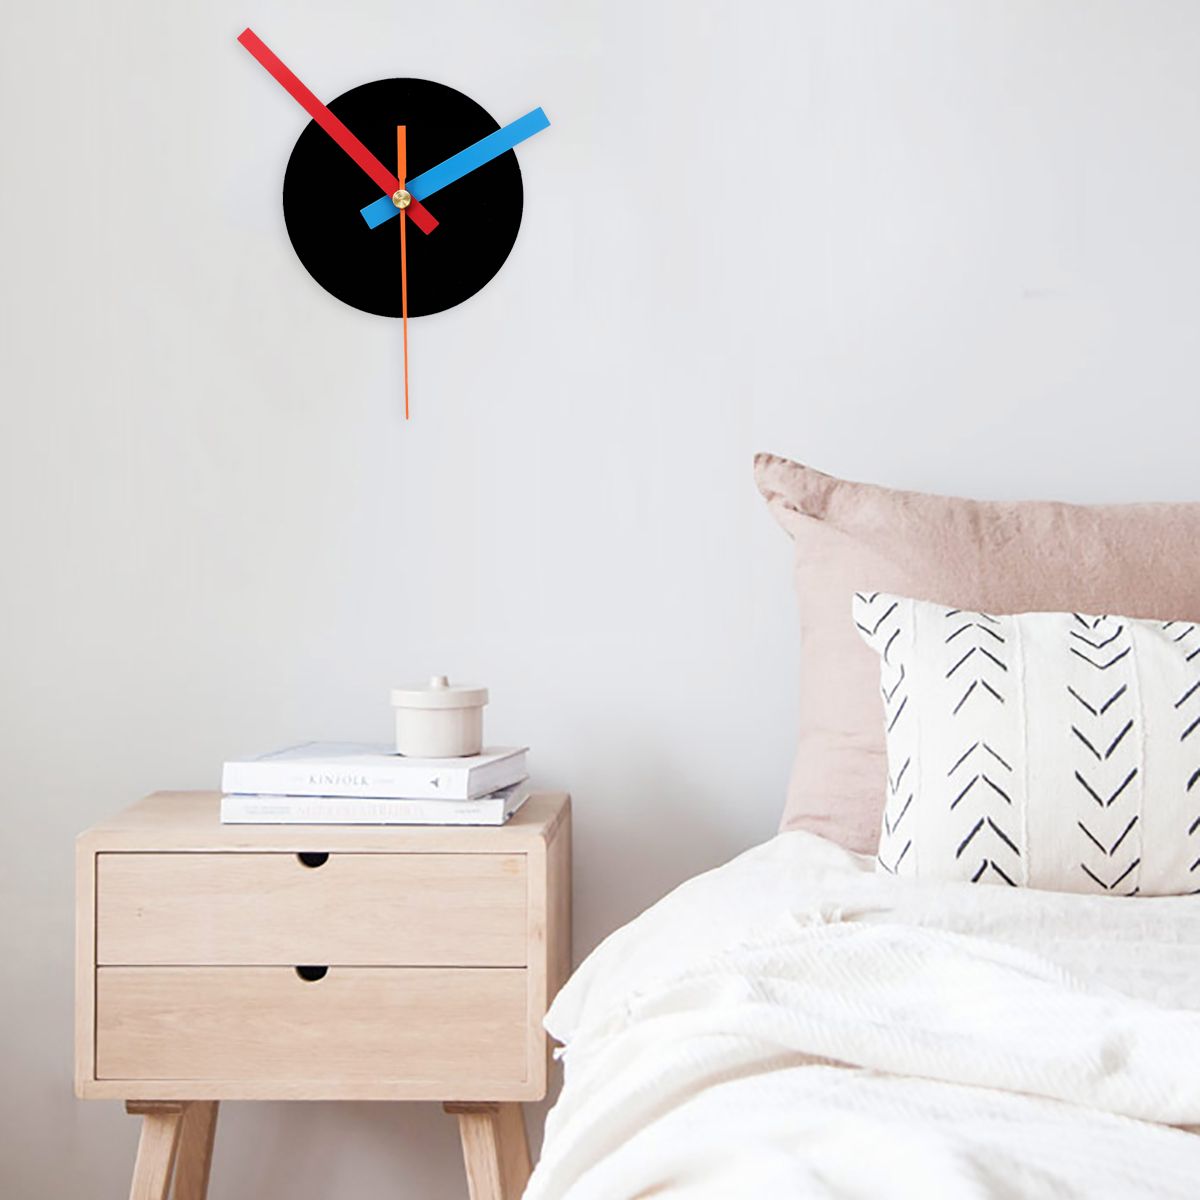 DIY-Quartz-Wall-Clock-Repair-Parts-Movement-Mechanism-Home-Hanging-Watch-Decorations-1549812